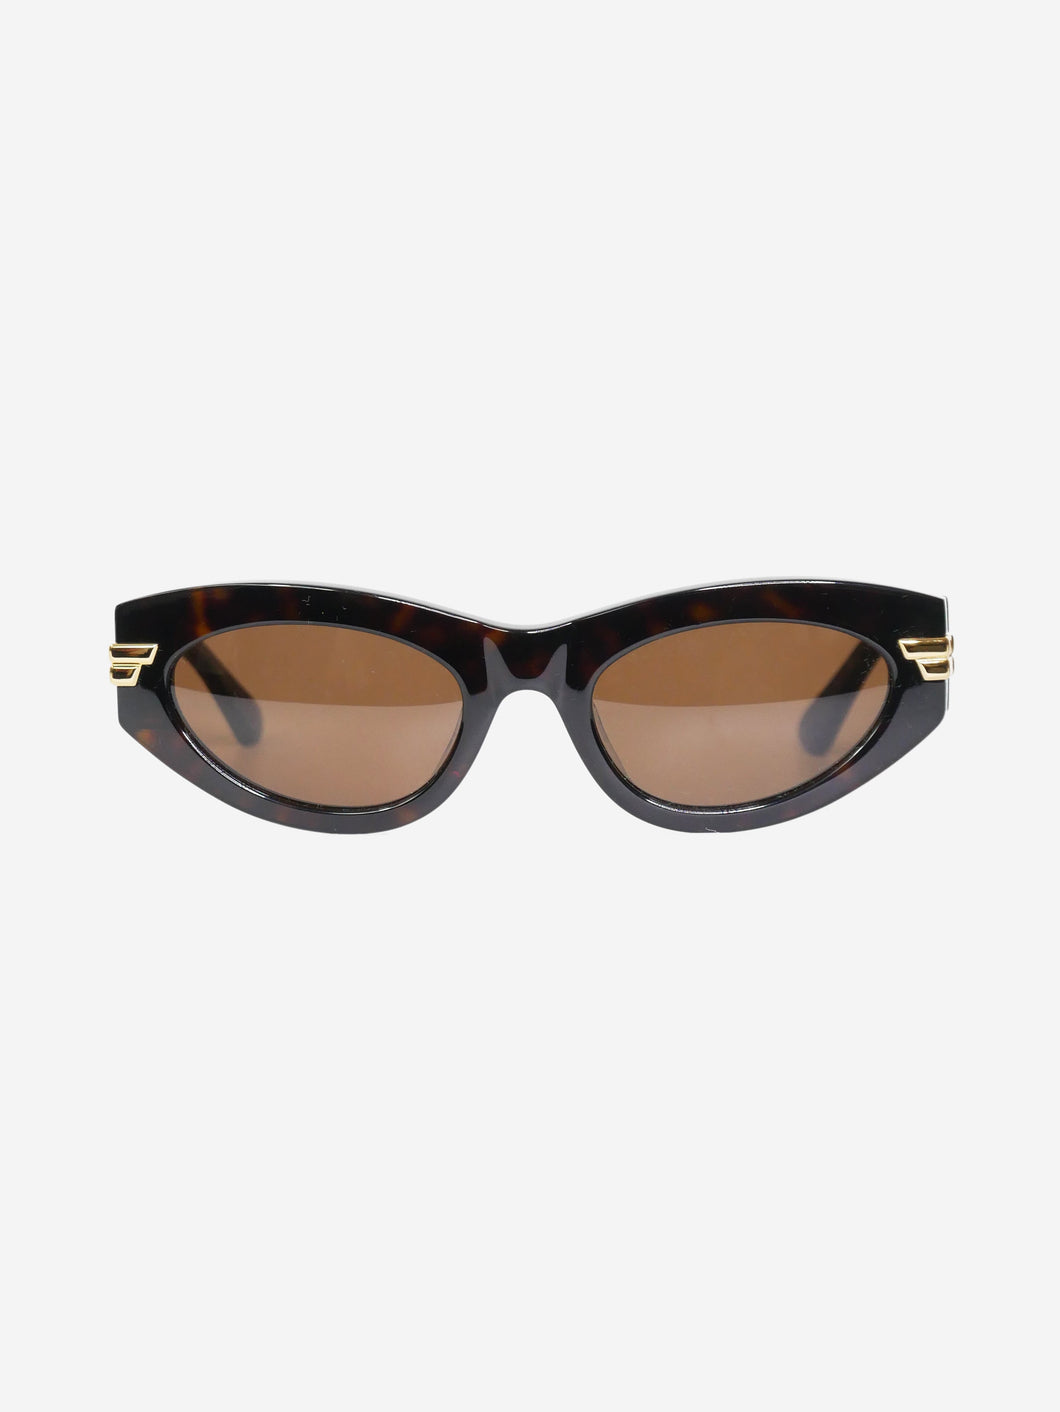 Brown tortoiseshell classic oval sunglasses Sunglasses Bottega Veneta 